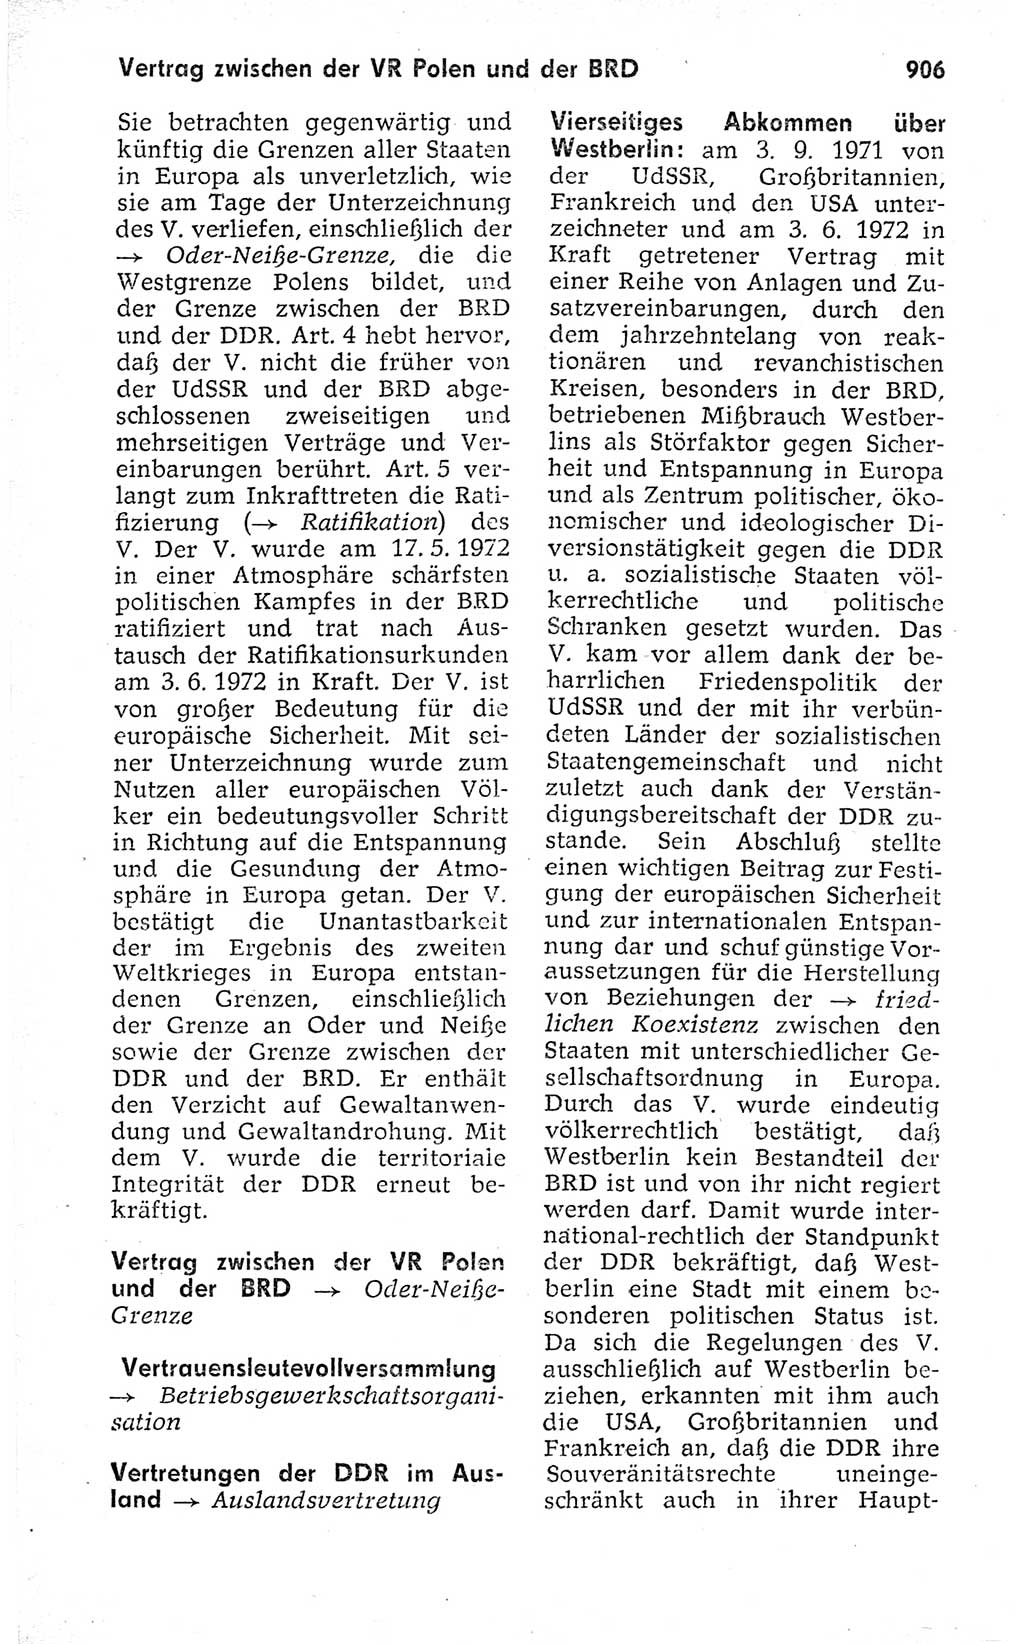 Kleines politisches Wörterbuch [Deutsche Demokratische Republik (DDR)] 1973, Seite 906 (Kl. pol. Wb. DDR 1973, S. 906)